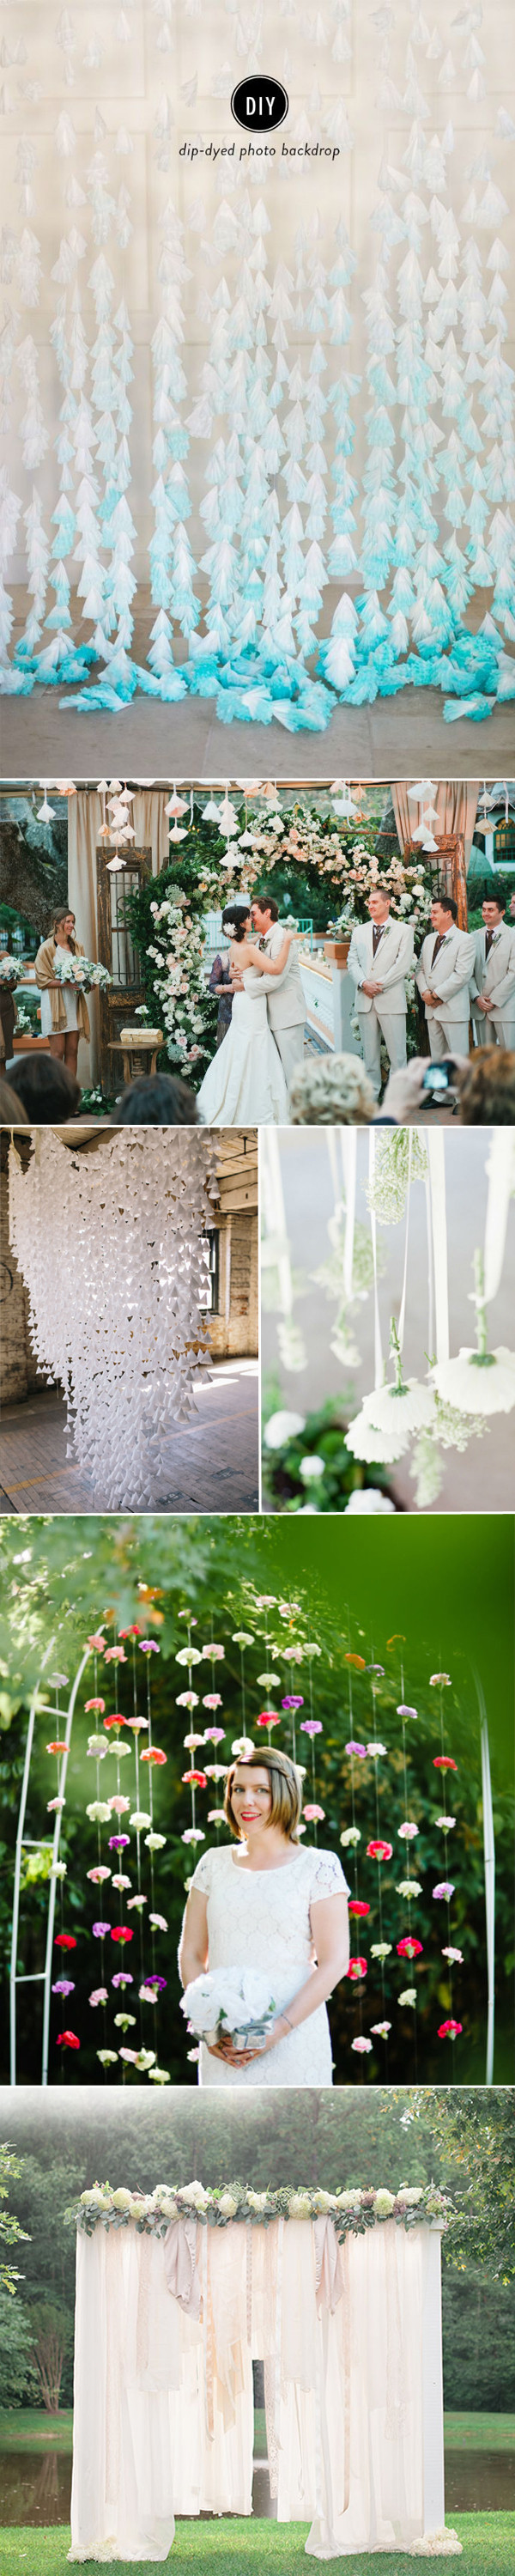 DIY Weddings Blog
 7 Charming DIY Wedding Decor Ideas We Love